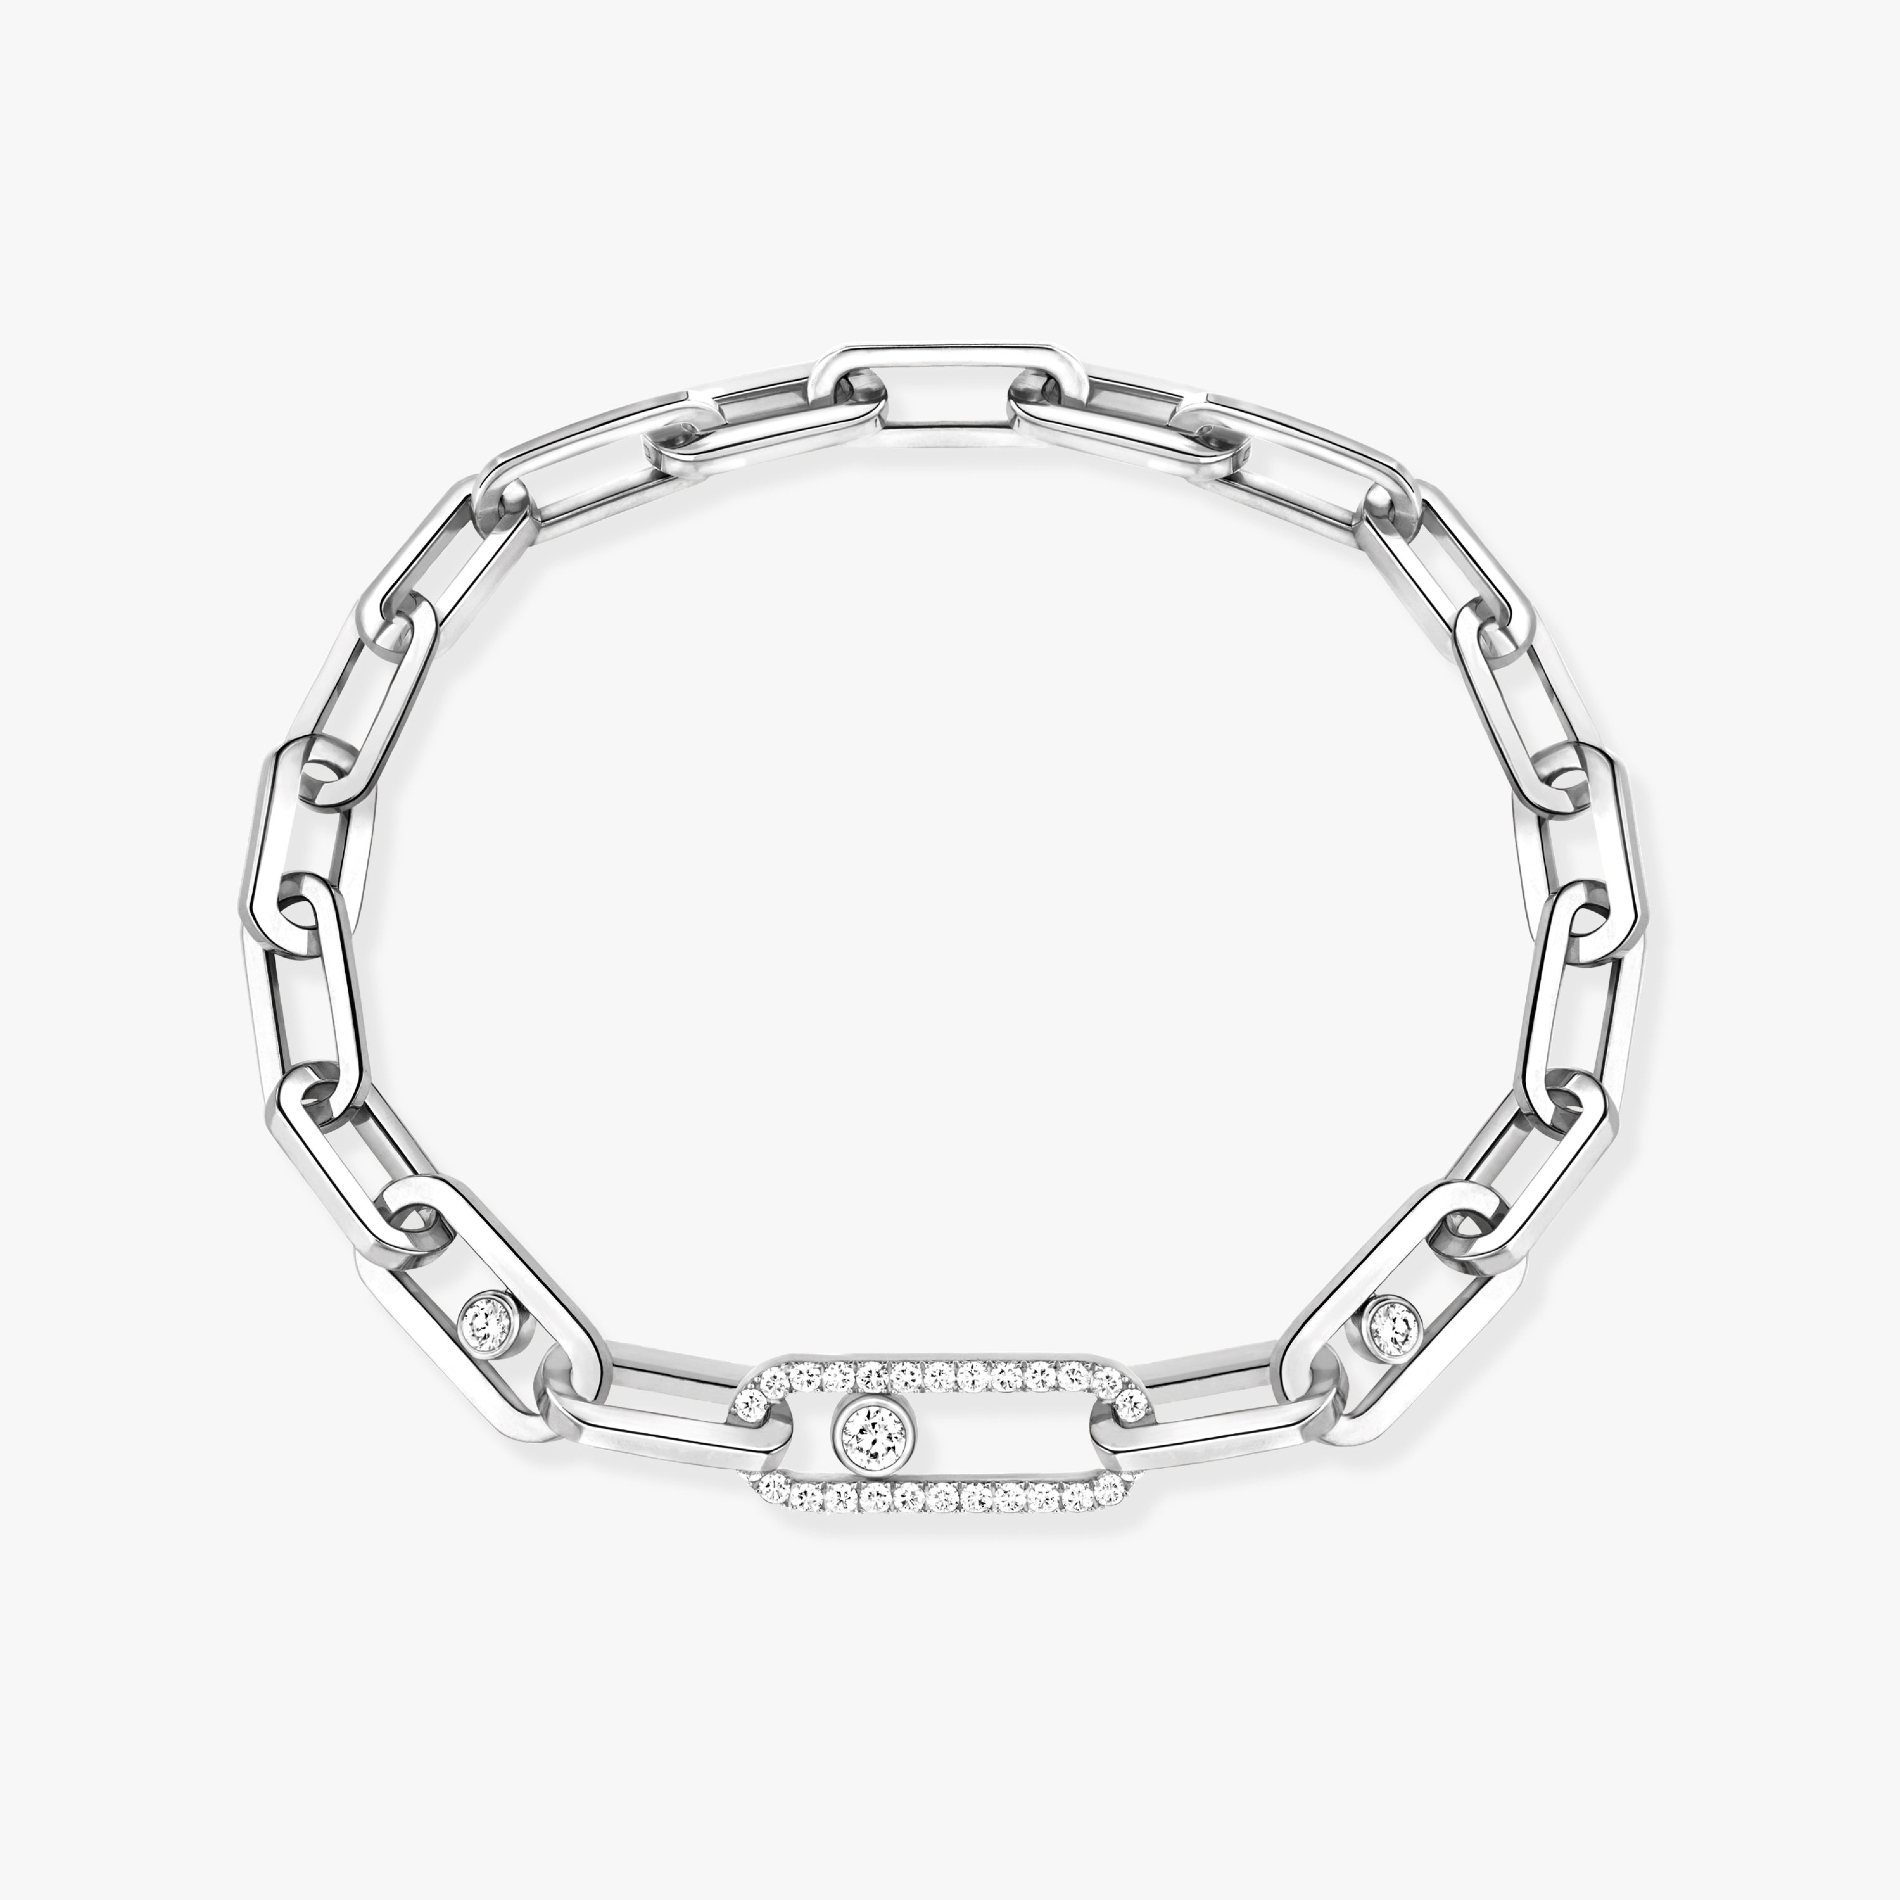 Move Link White Gold For Her Diamond Bracelet 12576-WG